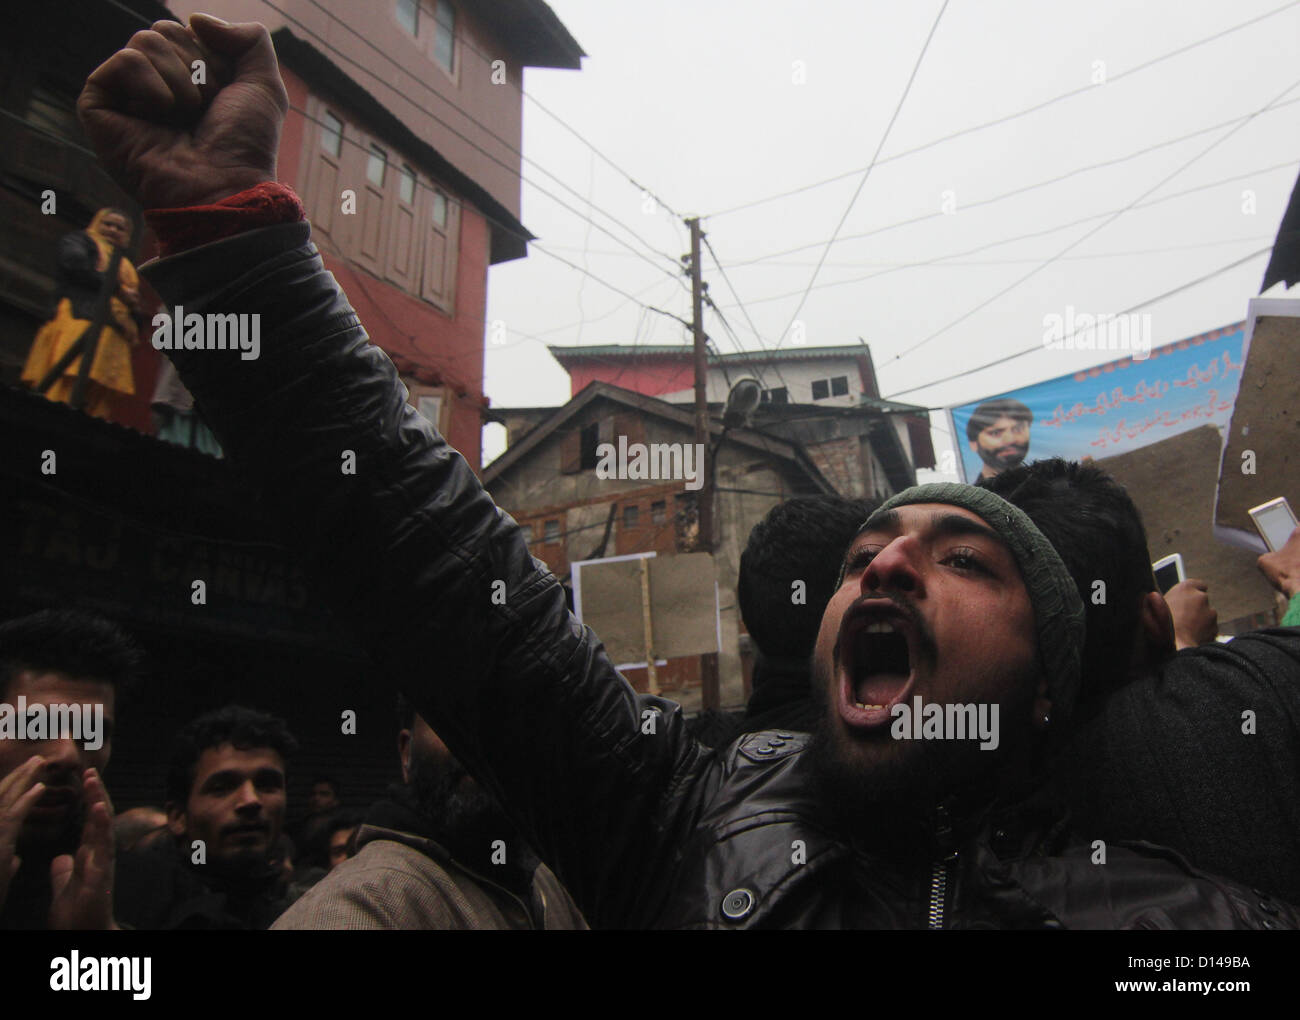 Srinagar, Indien. 7. Dezember 2012 - schreien Fans von Jammu und Kaschmir Liberation Front (GEISELN) pro Freiheit Parolen während einen Protestmarsch in Srinagar der Sommerhauptstadt von indischen Kaschmir am 12.07.2012 Protest war gegen Gerichtsurteil gegen Ex-Kämpfer, beschreibt es als Regierung der Indias Versuch, Menschen durch Justiz zu besiegen. Foto/Altaf Zargar/Zuma Press (Kredit-Bild: © Altaf Zargar/ZUMAPRESS.com) Stockfoto